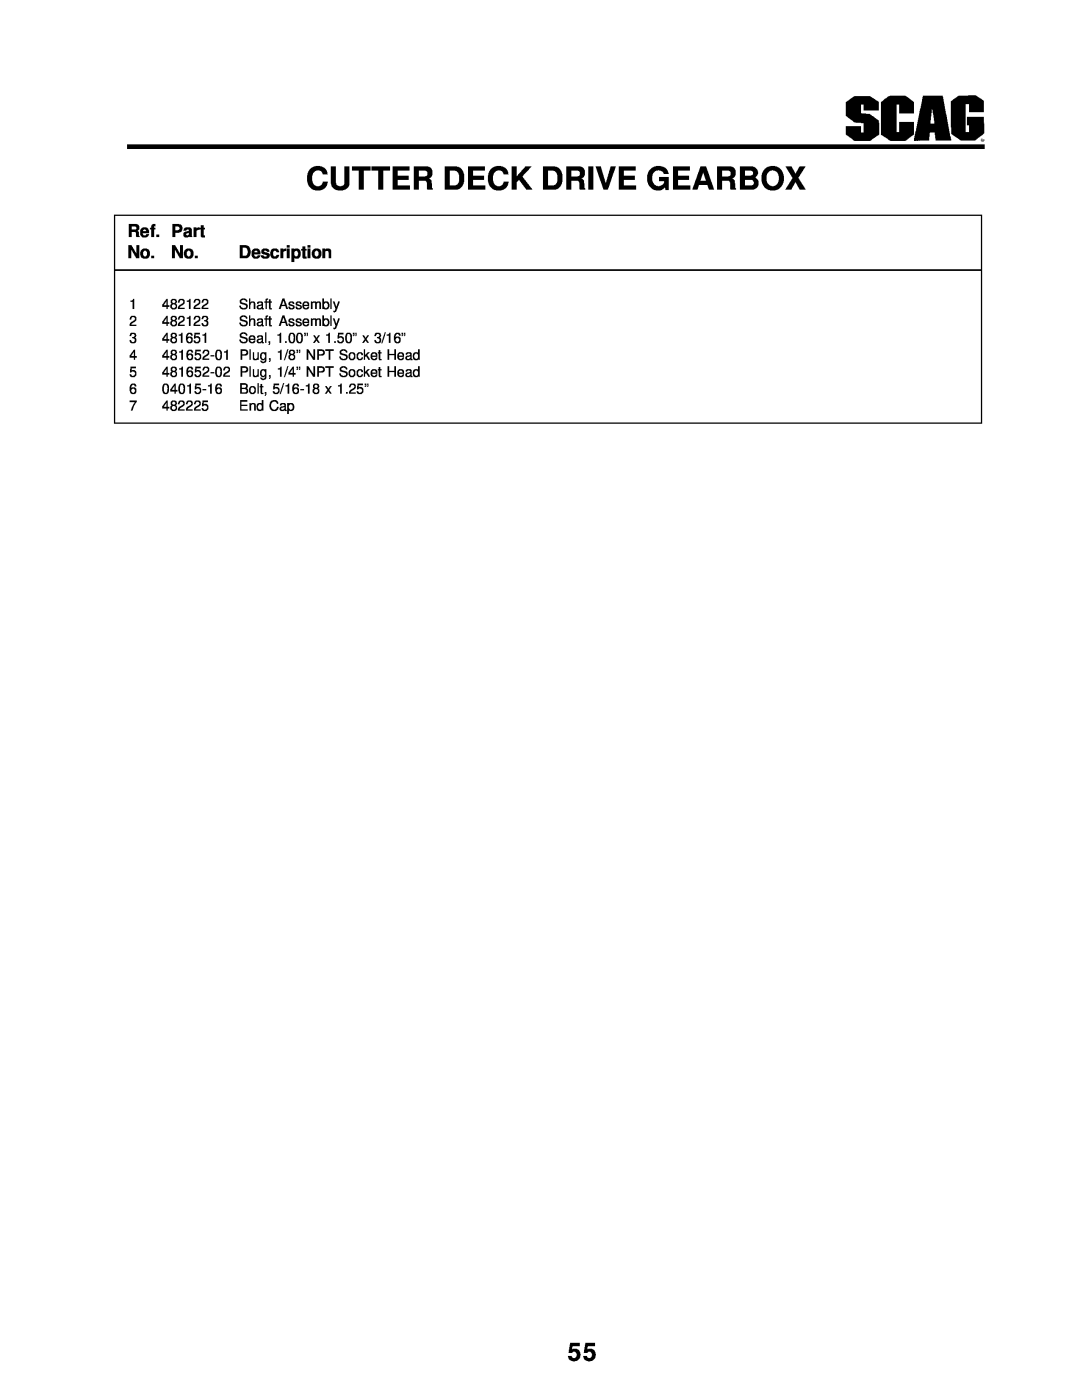 MB QUART SCR manual Cutter Deck Drive Gearbox, Ref. Part No. No. Description 